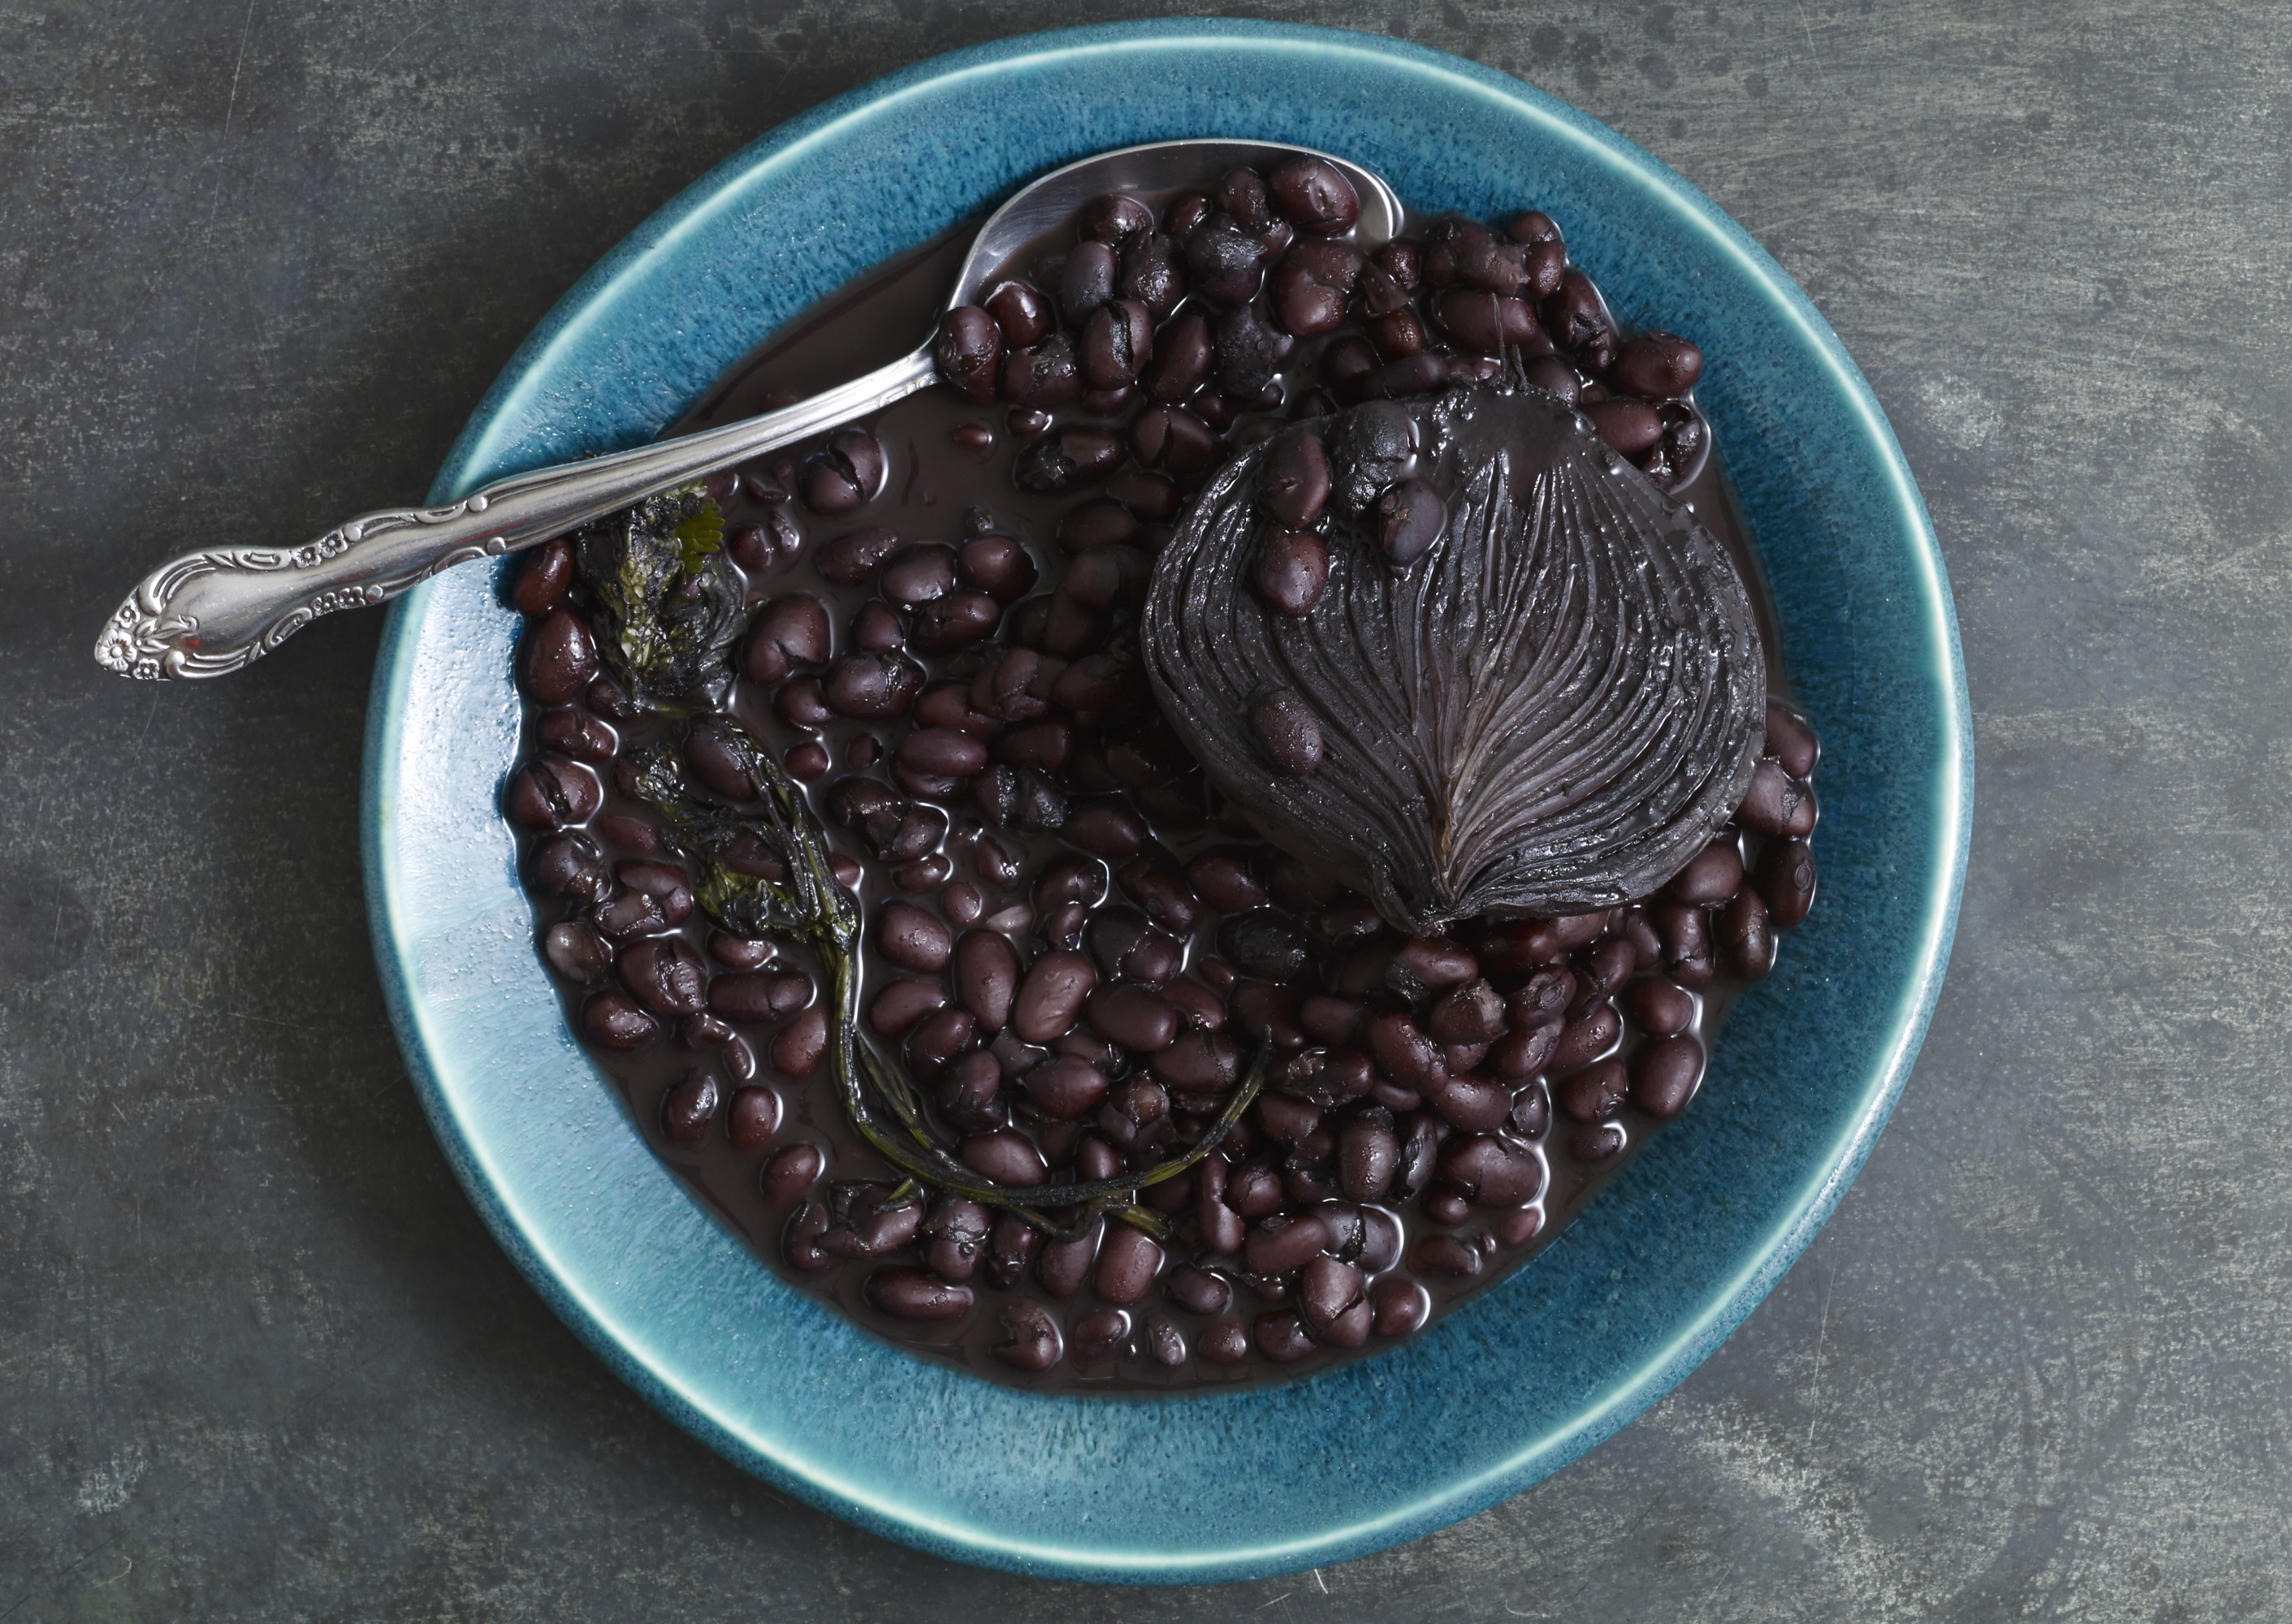 Pati Jinich's Black Beans from the Pot (Penny De Los Santos)